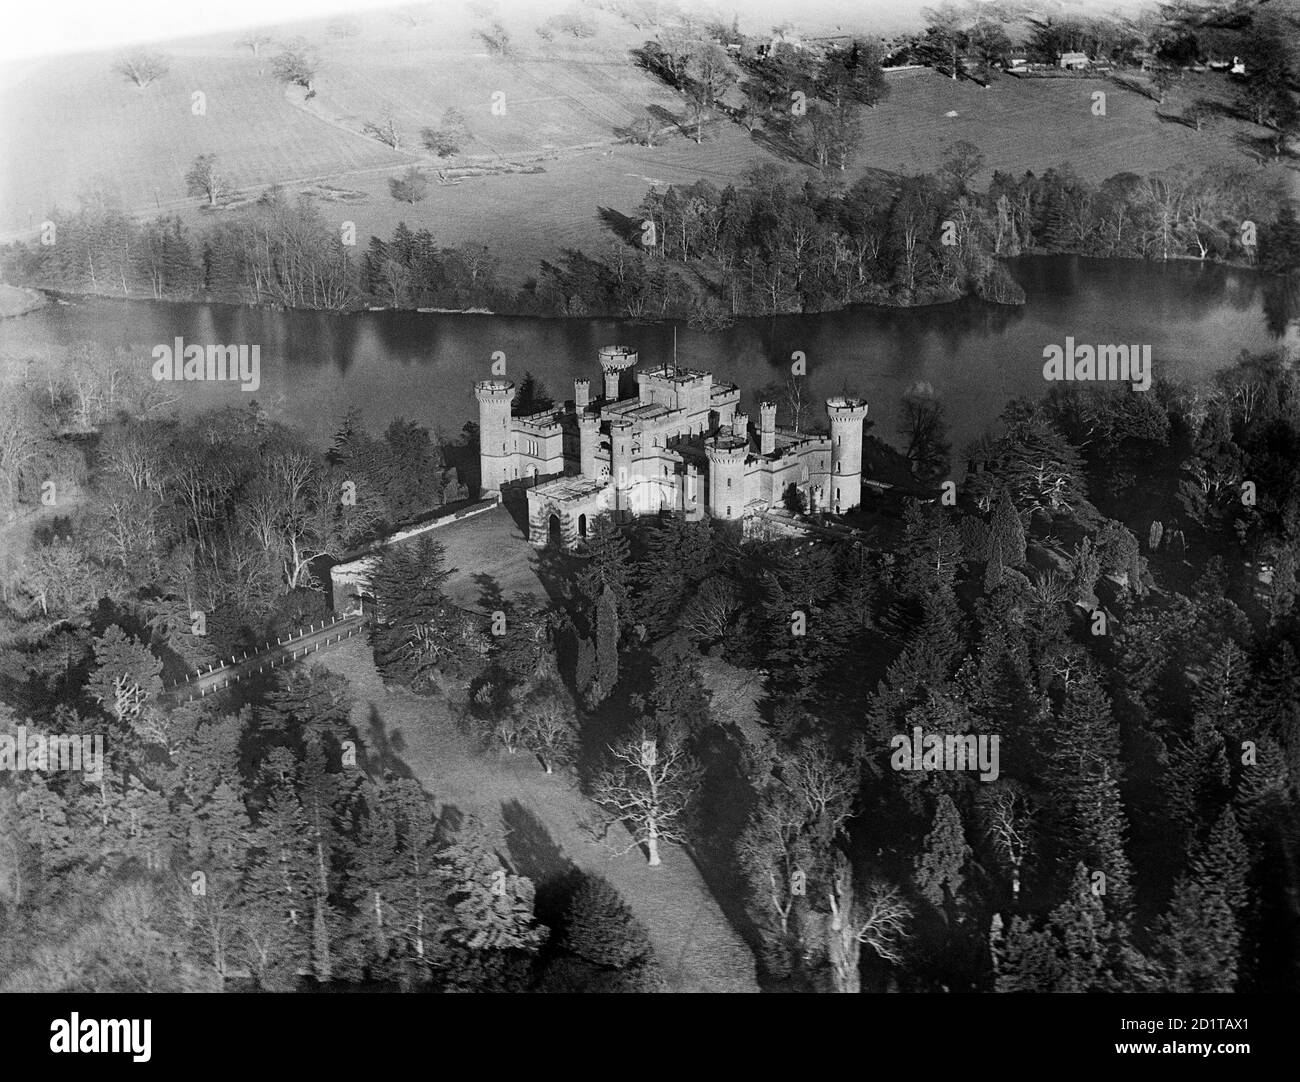 CHÂTEAU D'EASTNOR, près de Ledbury, Herefordshire. Vue aérienne du château d'Eastnor, construit en 1812-20 par Robert Smirke pour ressembler à un château médiéval. Photographié en mars 1921. Collection Aerofilm (voir liens). Banque D'Images